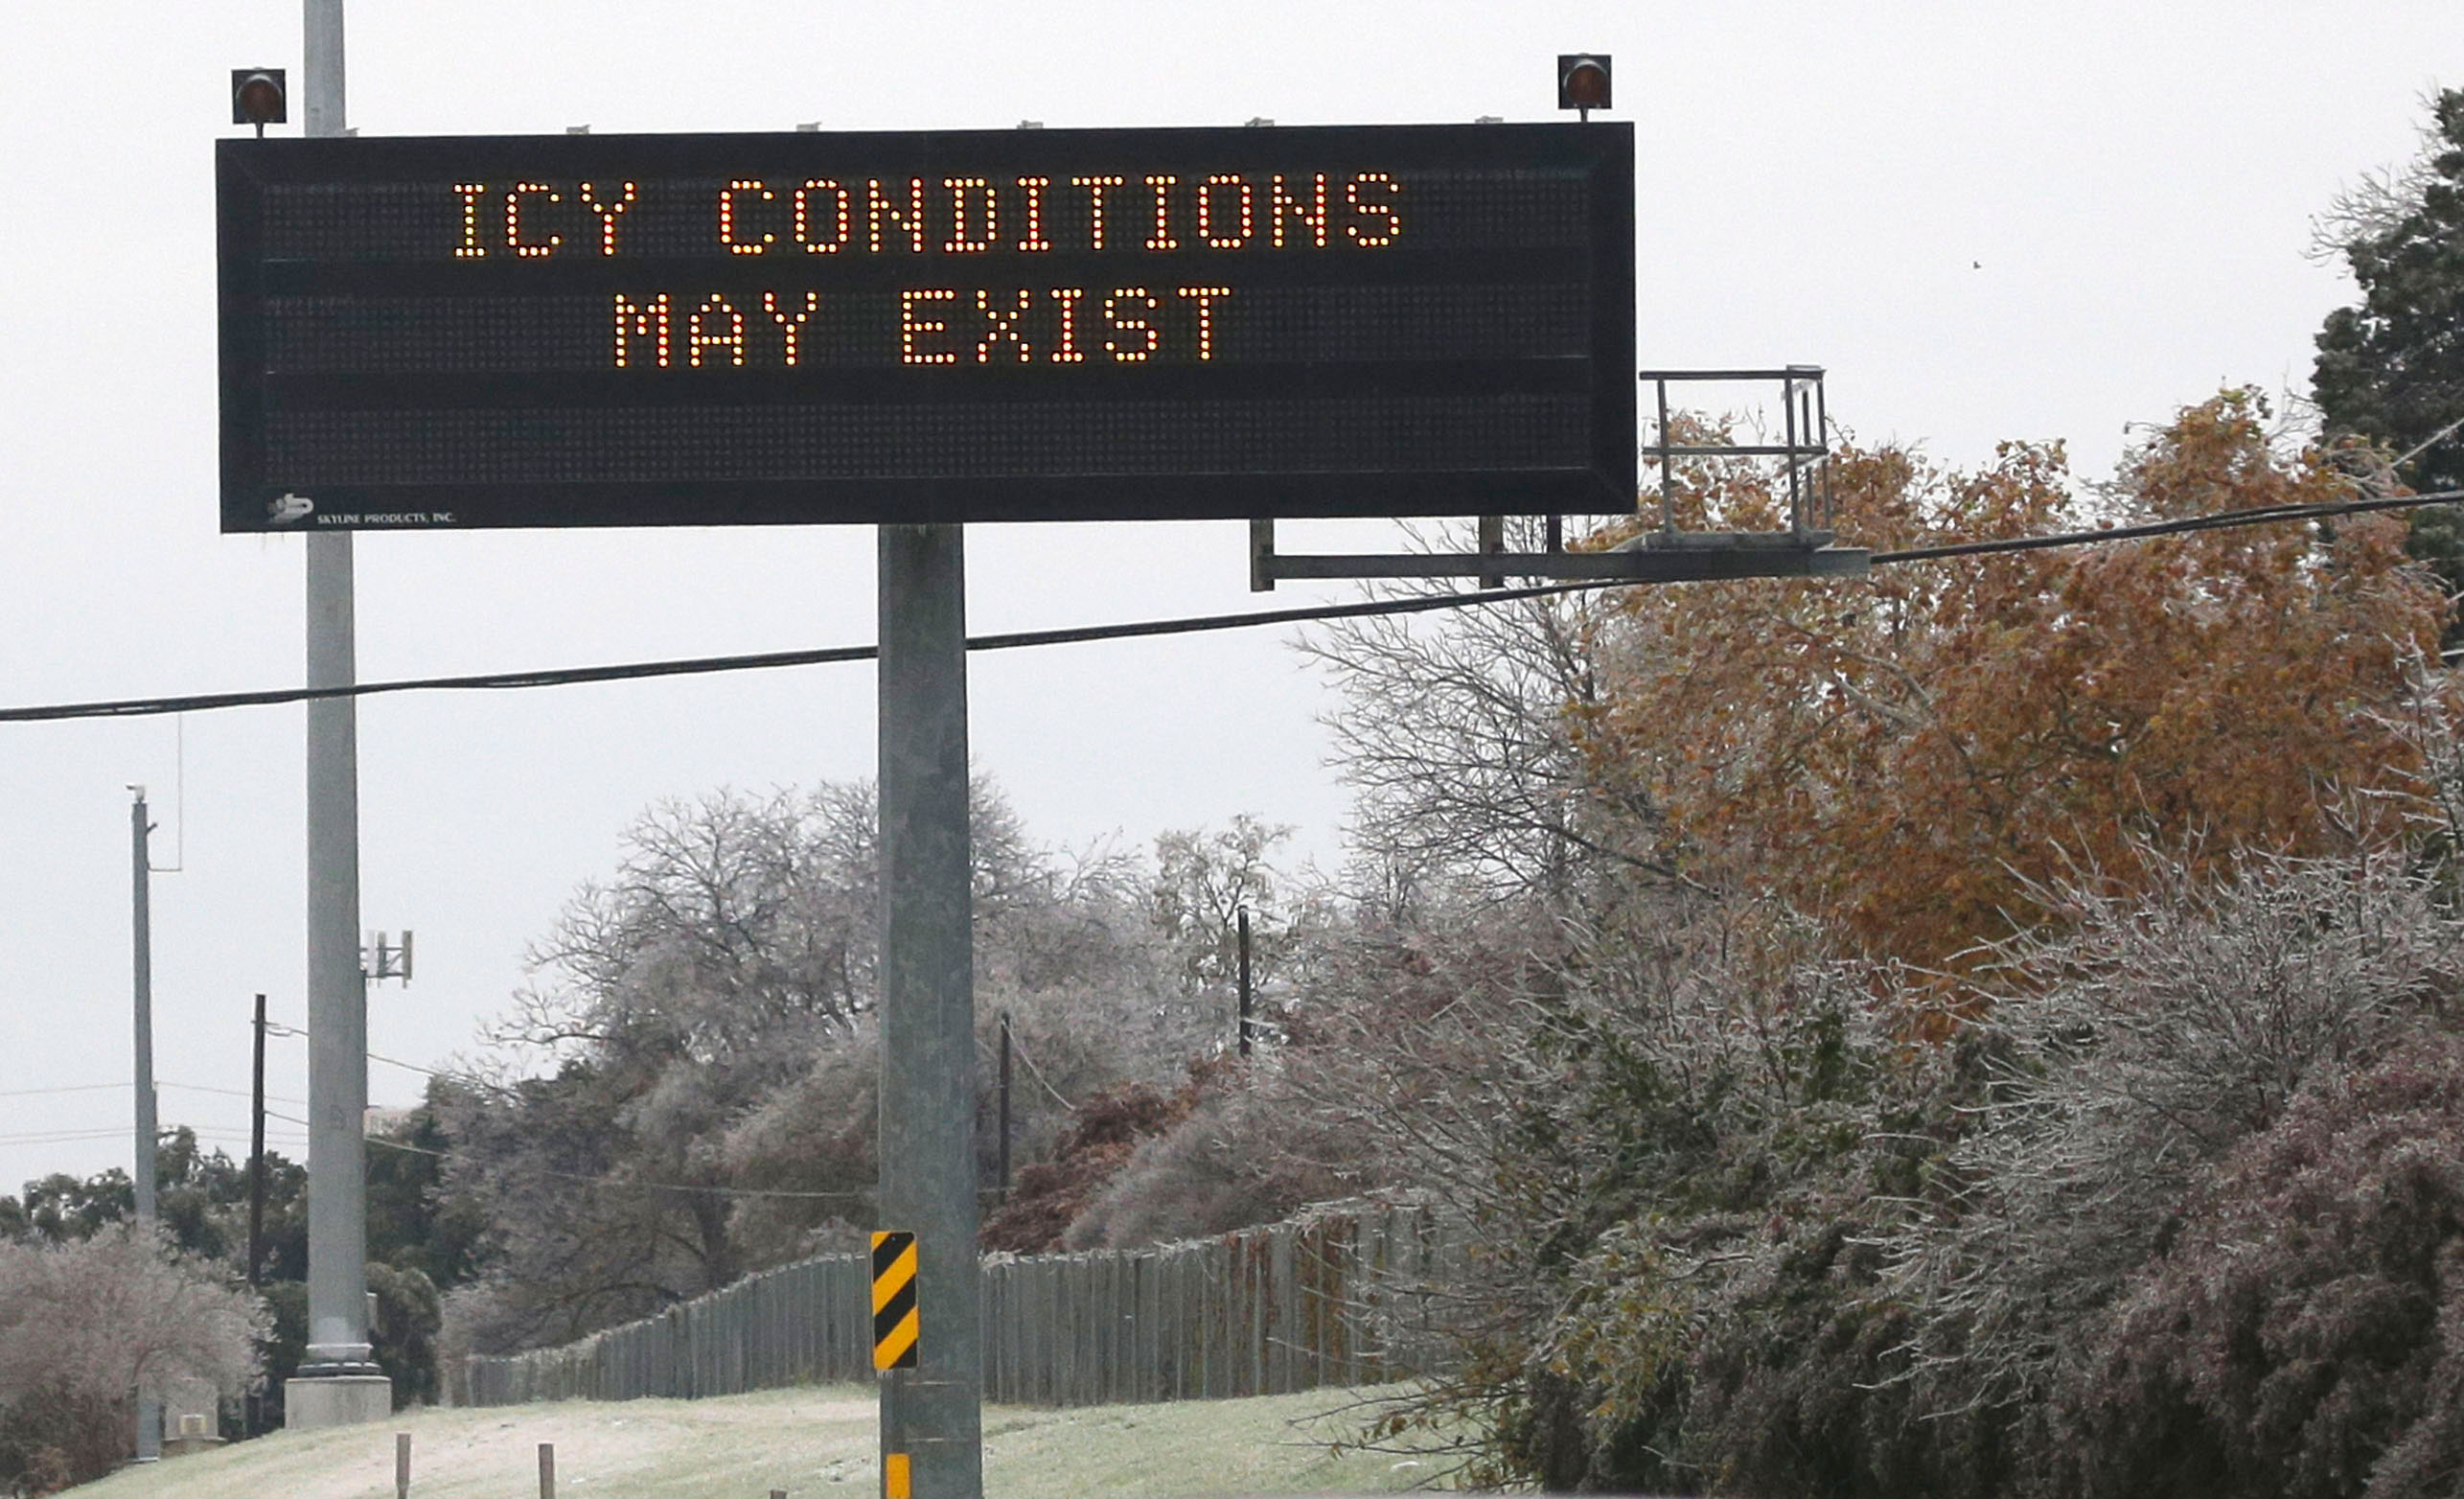 Icy roads wreak havoc on Maryland roads Sunday